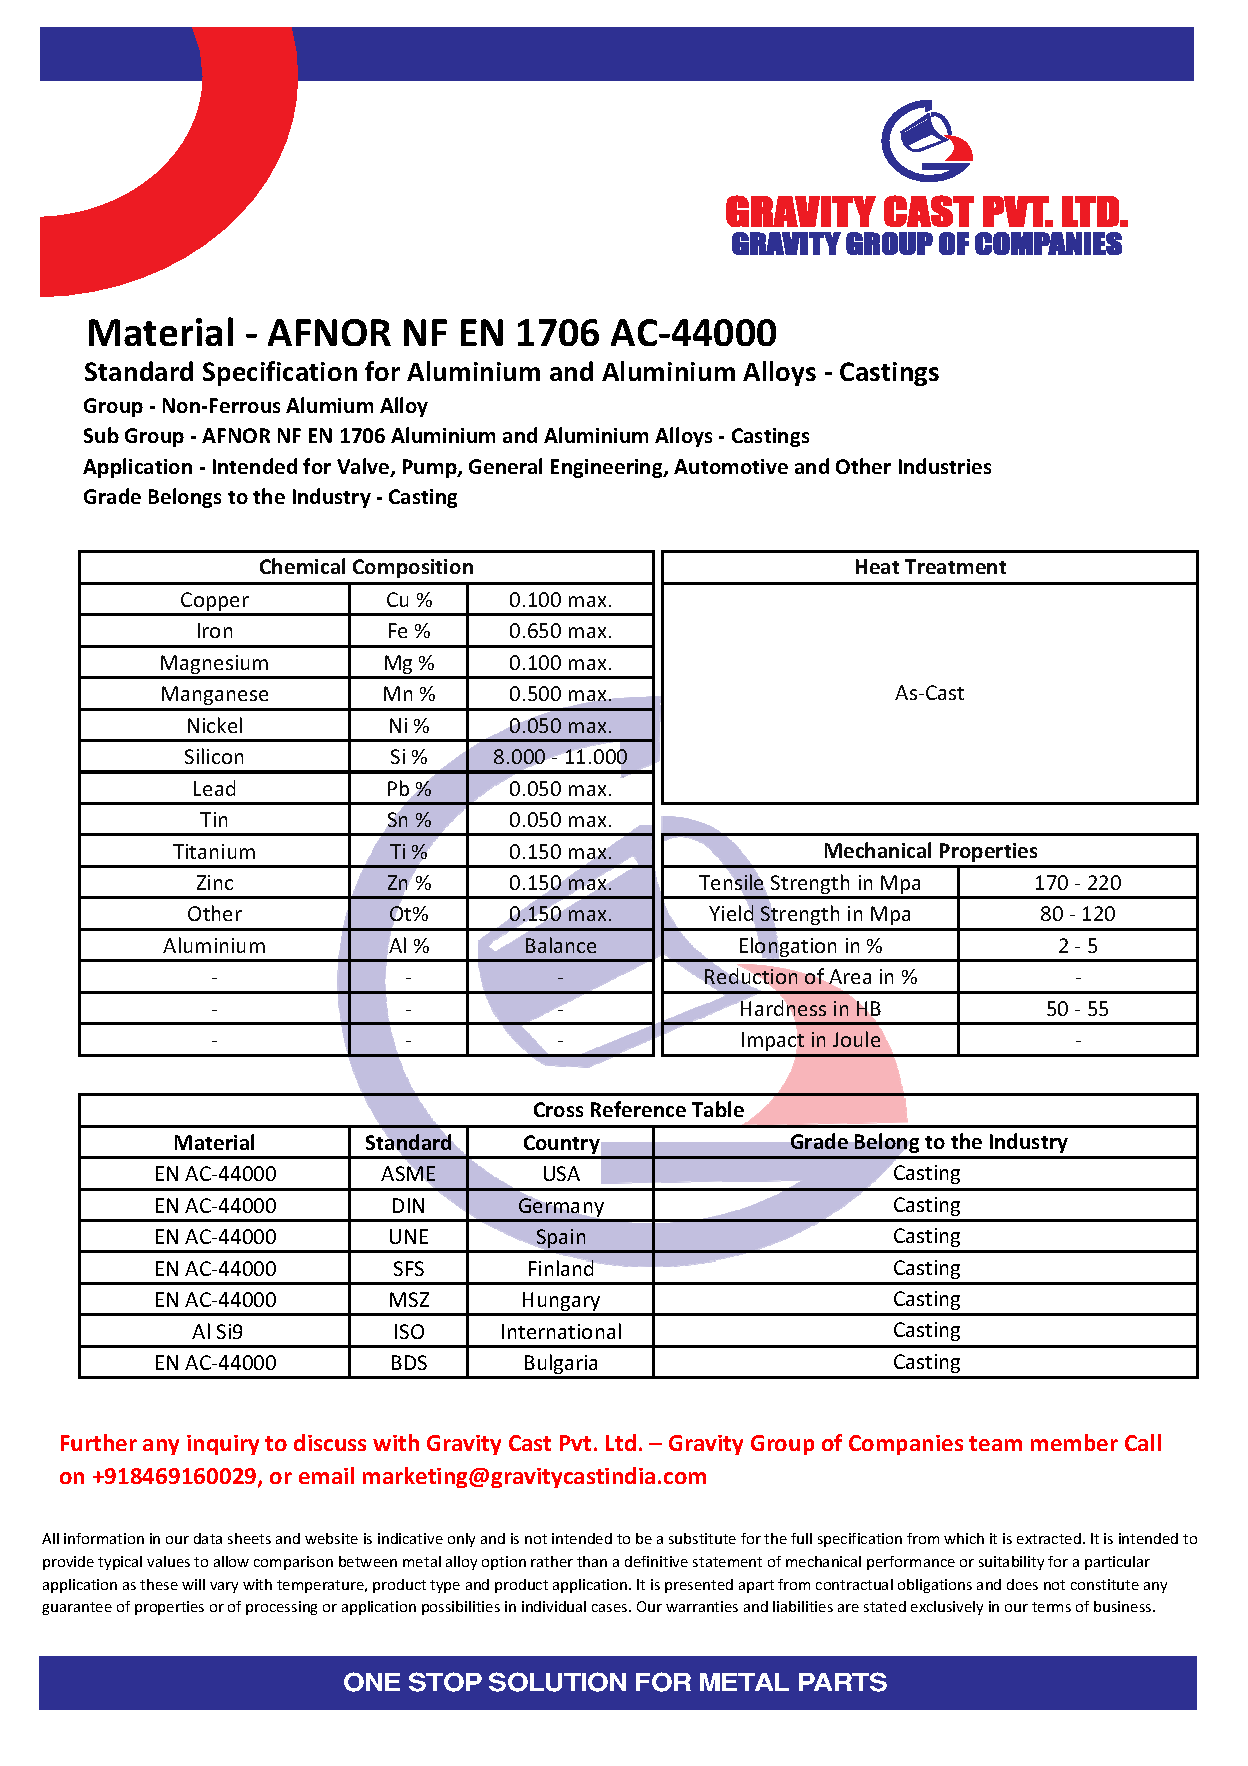 AFNOR NF EN 1706 AC-44000.pdf